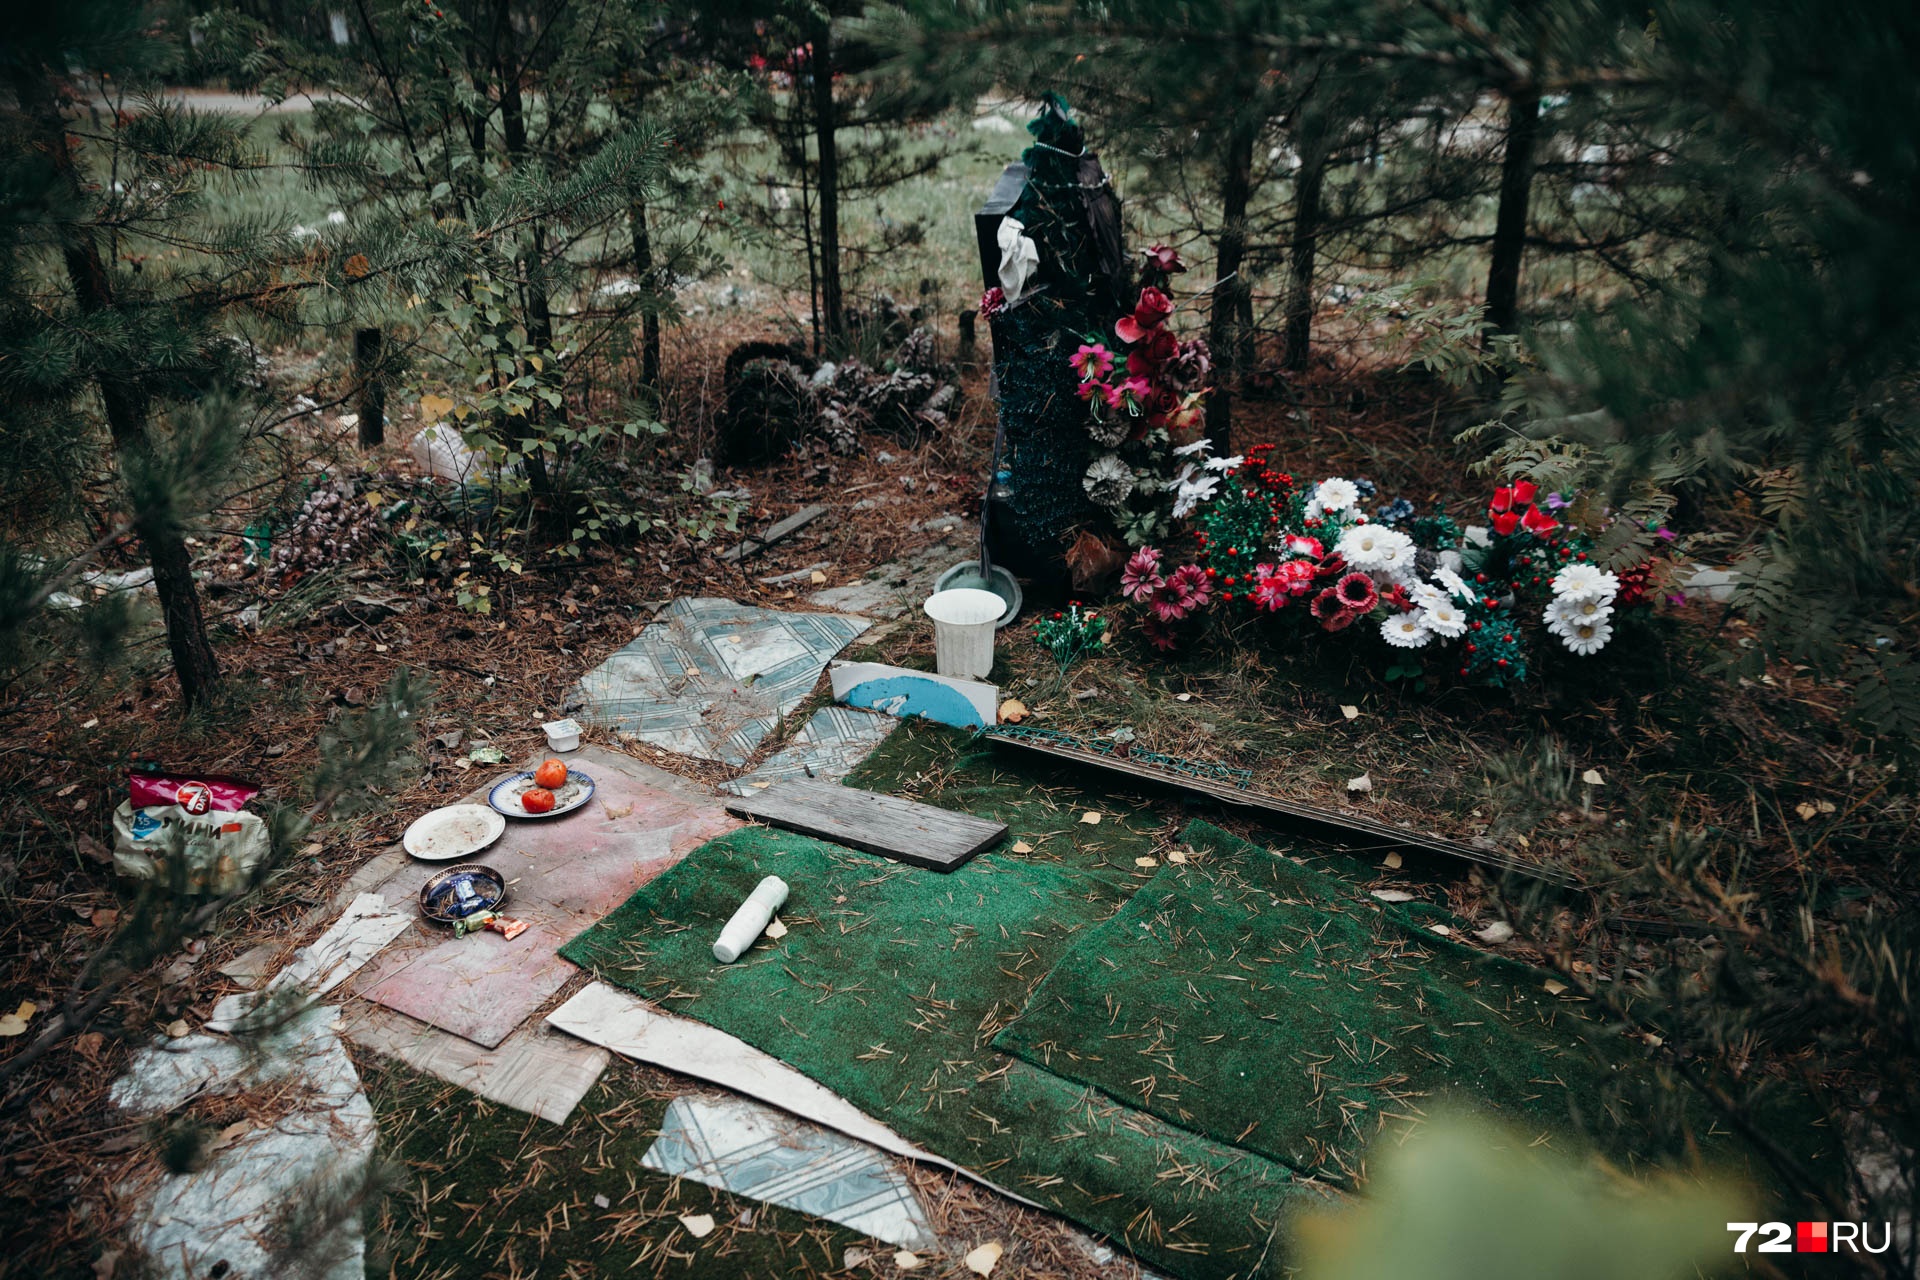 Цветы на кладбище для невостребованных умерших — тоже большая редкость